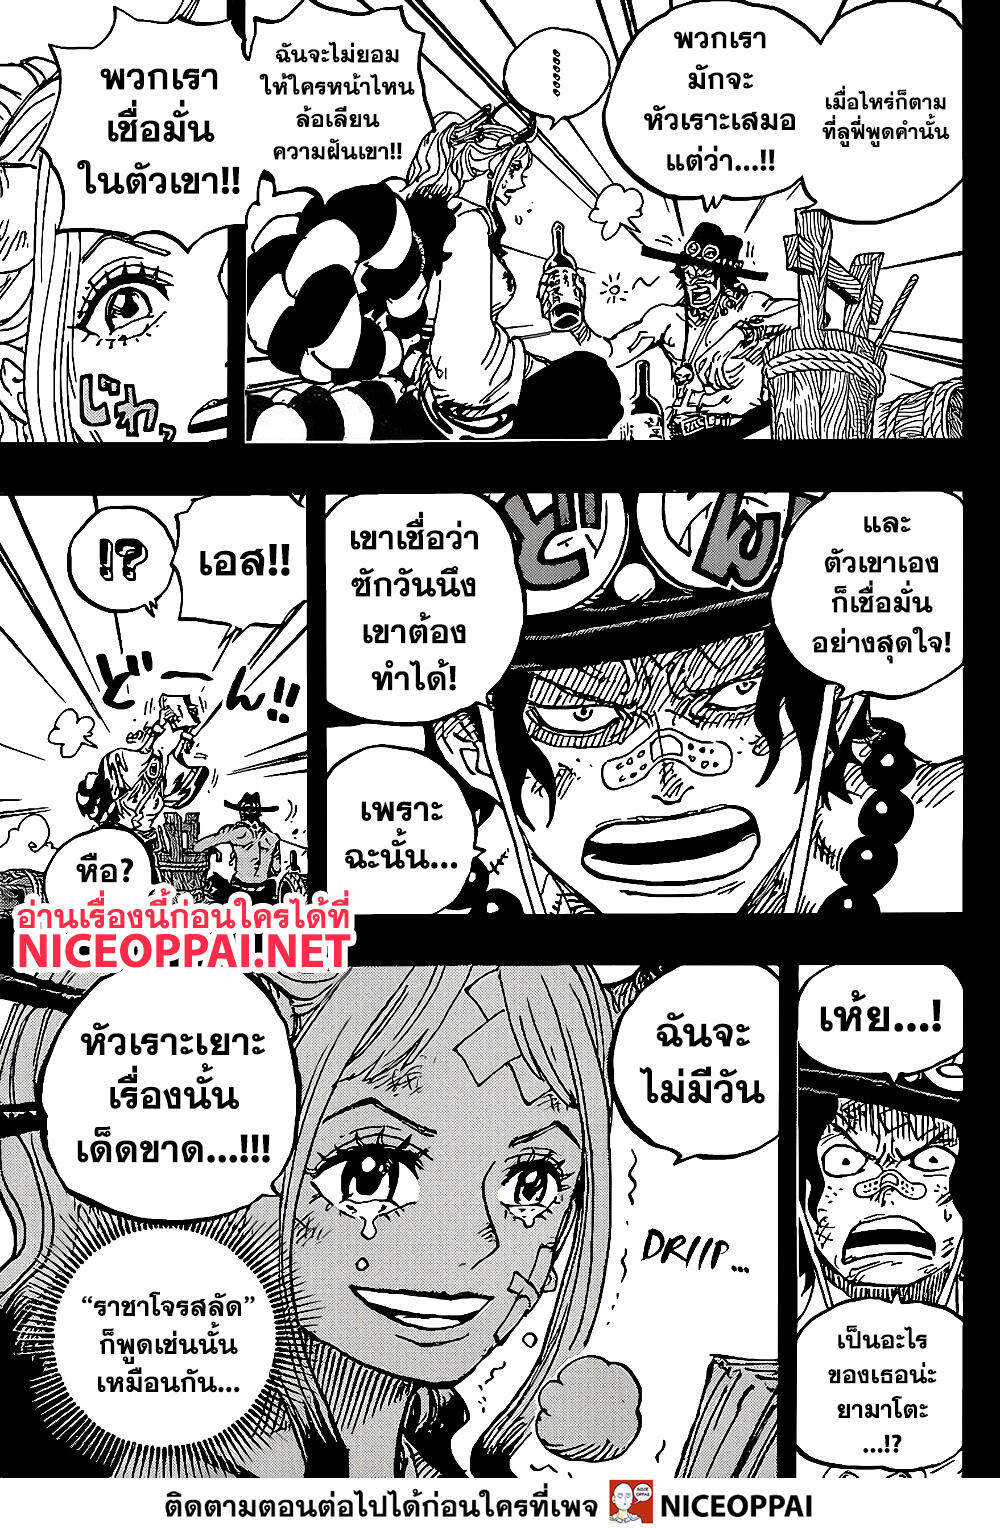 One Piece 1000-ลูฟี่ หมวกฟาง